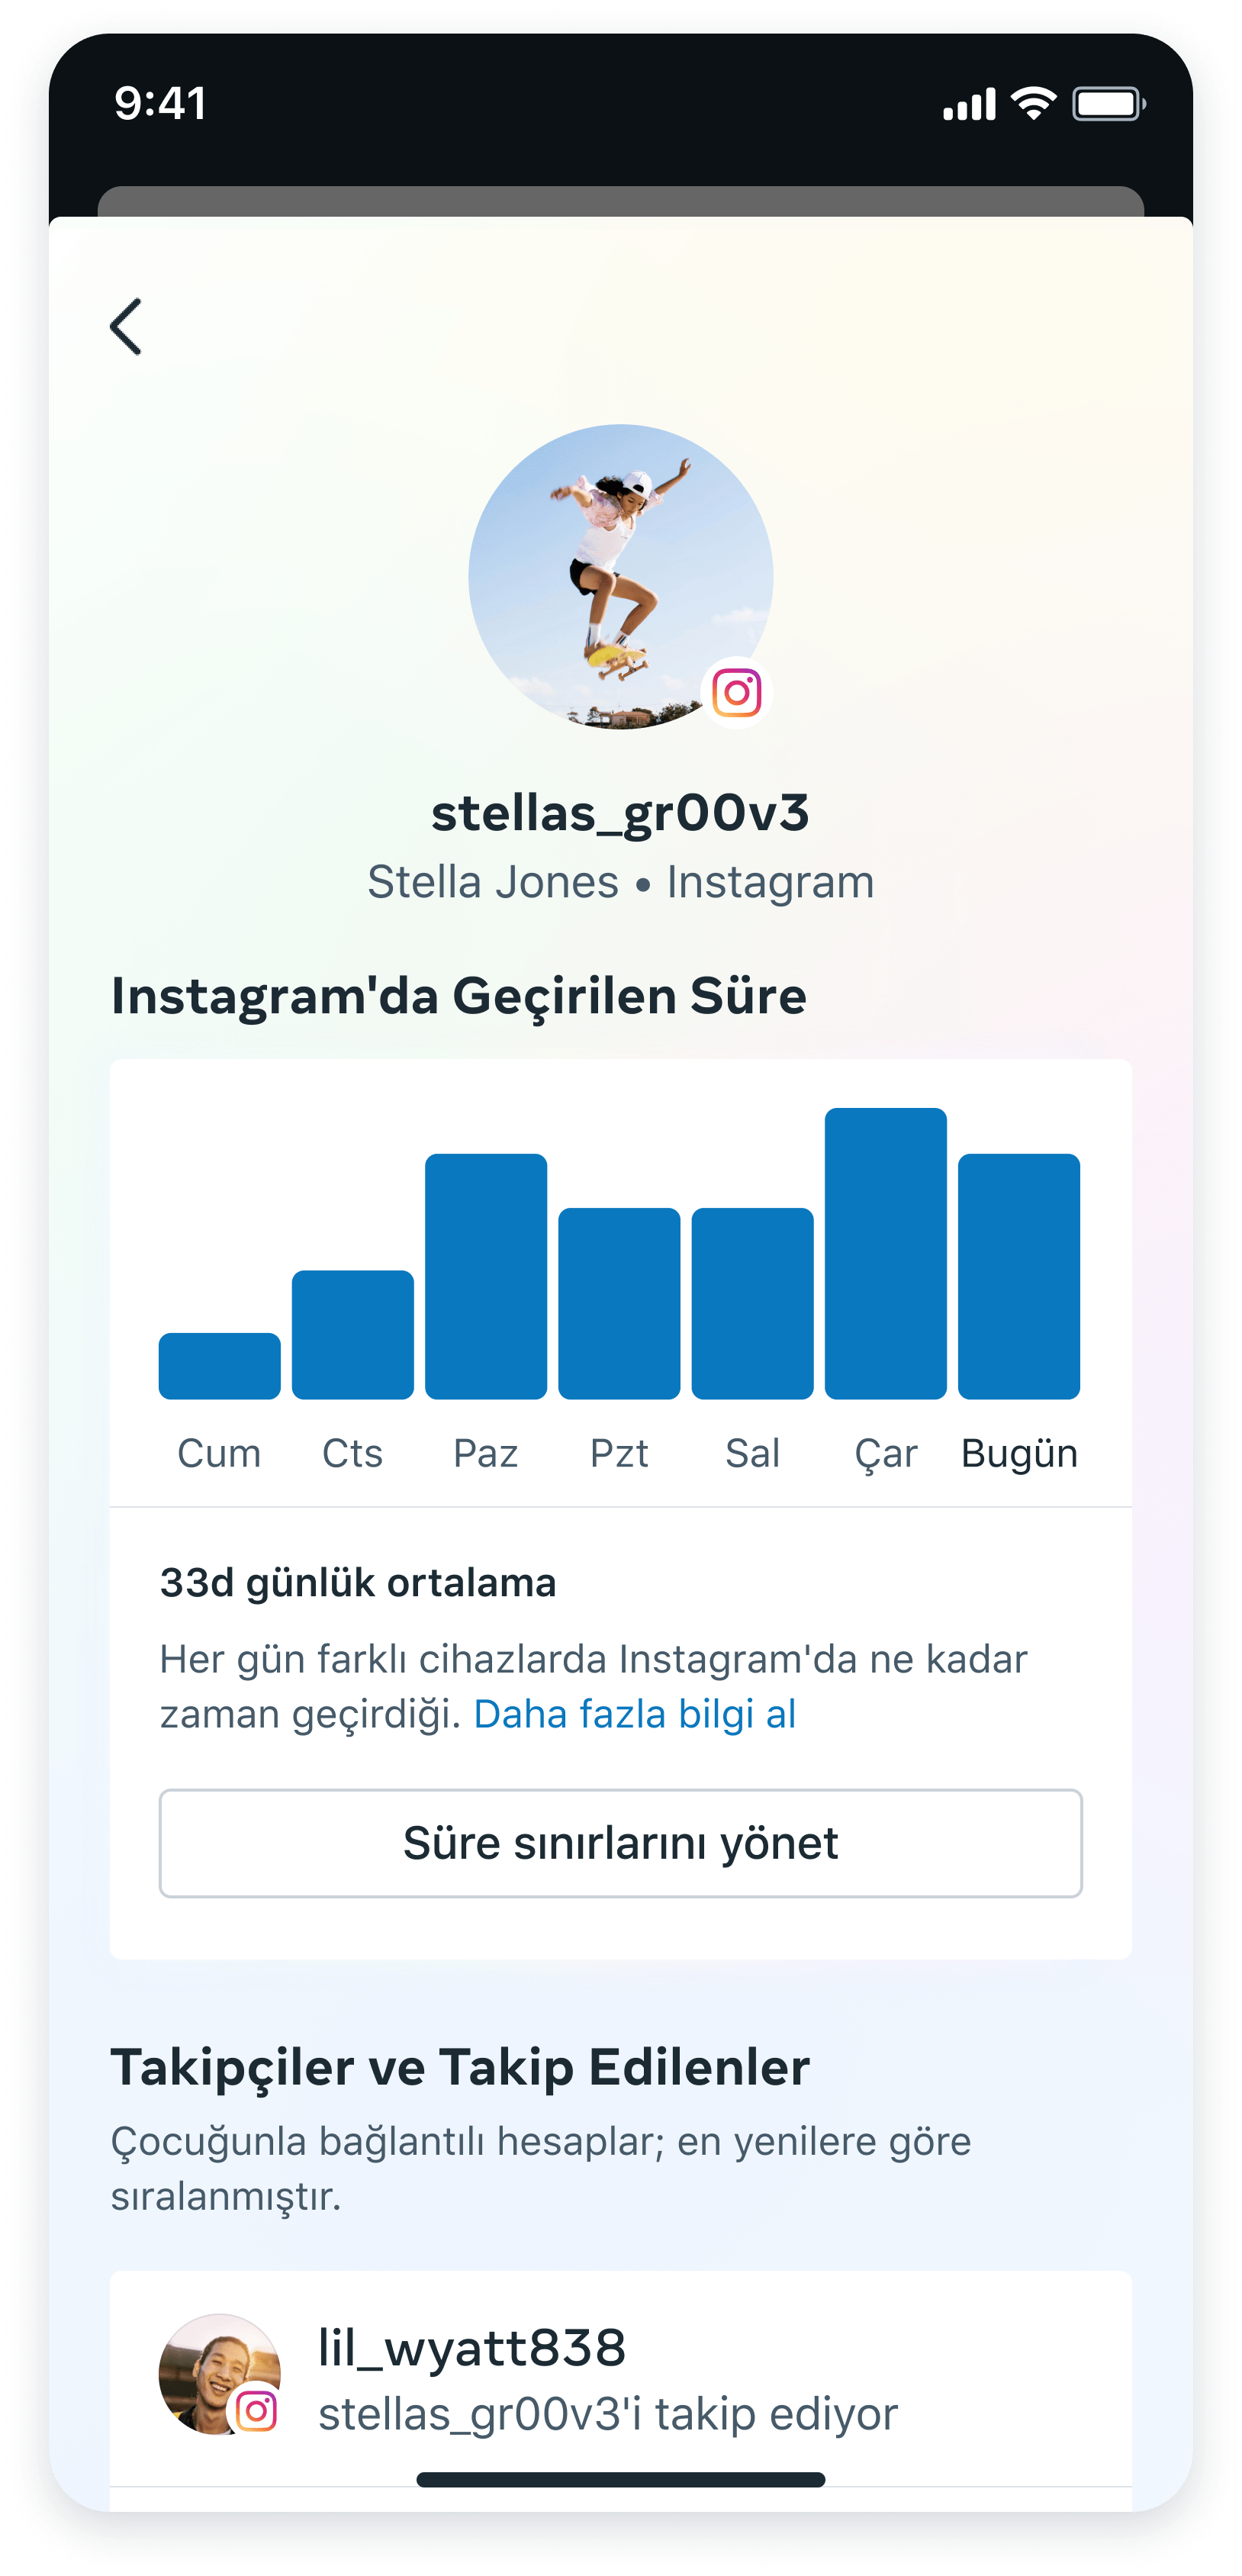 Instagram Aile Merkezi özelliği üzerinden zaman kontrolü